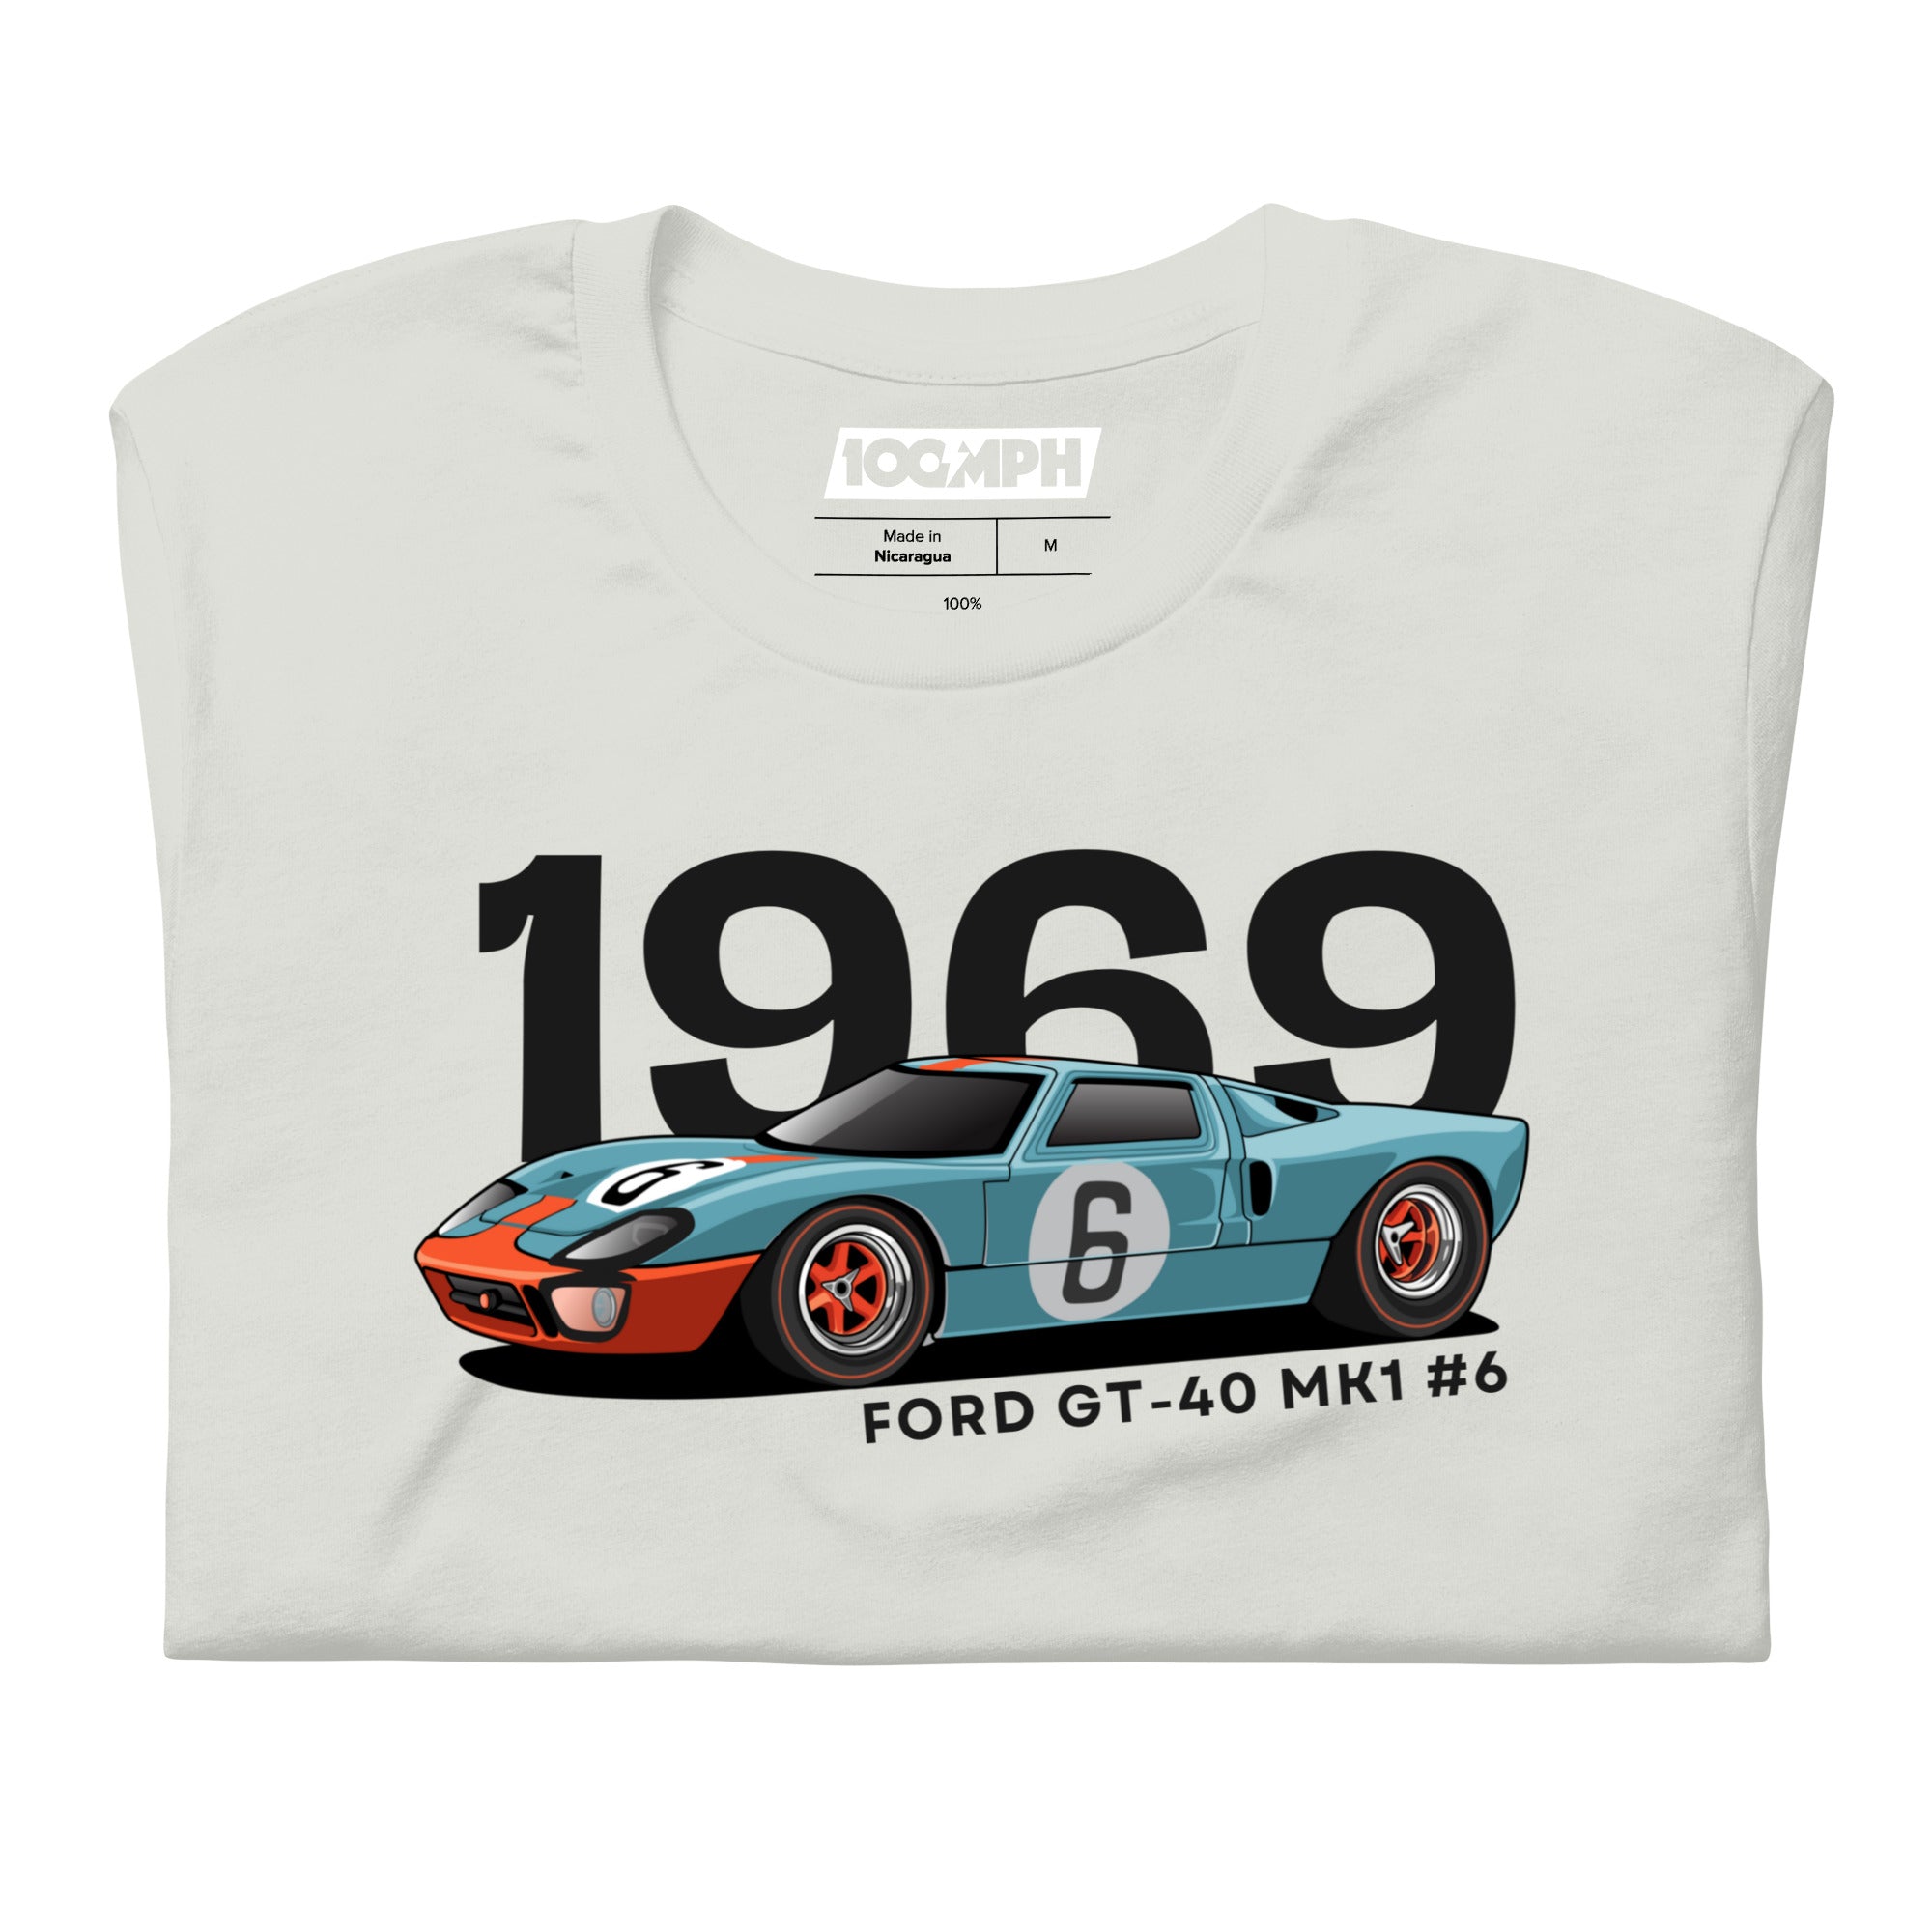 Ford GT-40 Mk1 #6 Le Mans Winner (1969)